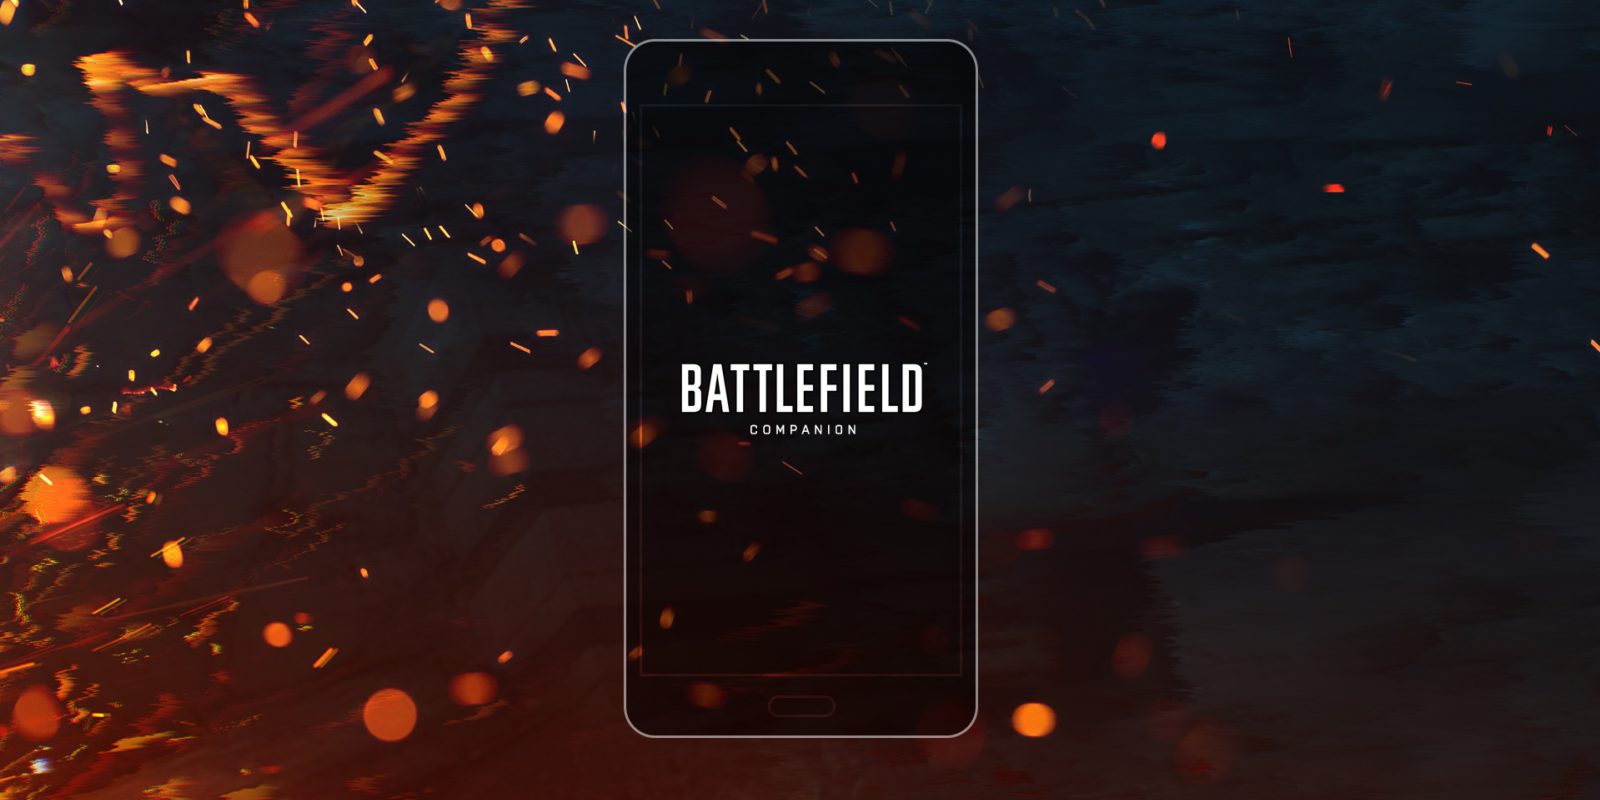 'Battlefield Companion', la aplicación acompañante de 'Battlefield 1' y Battlefield 4', ya está disponible